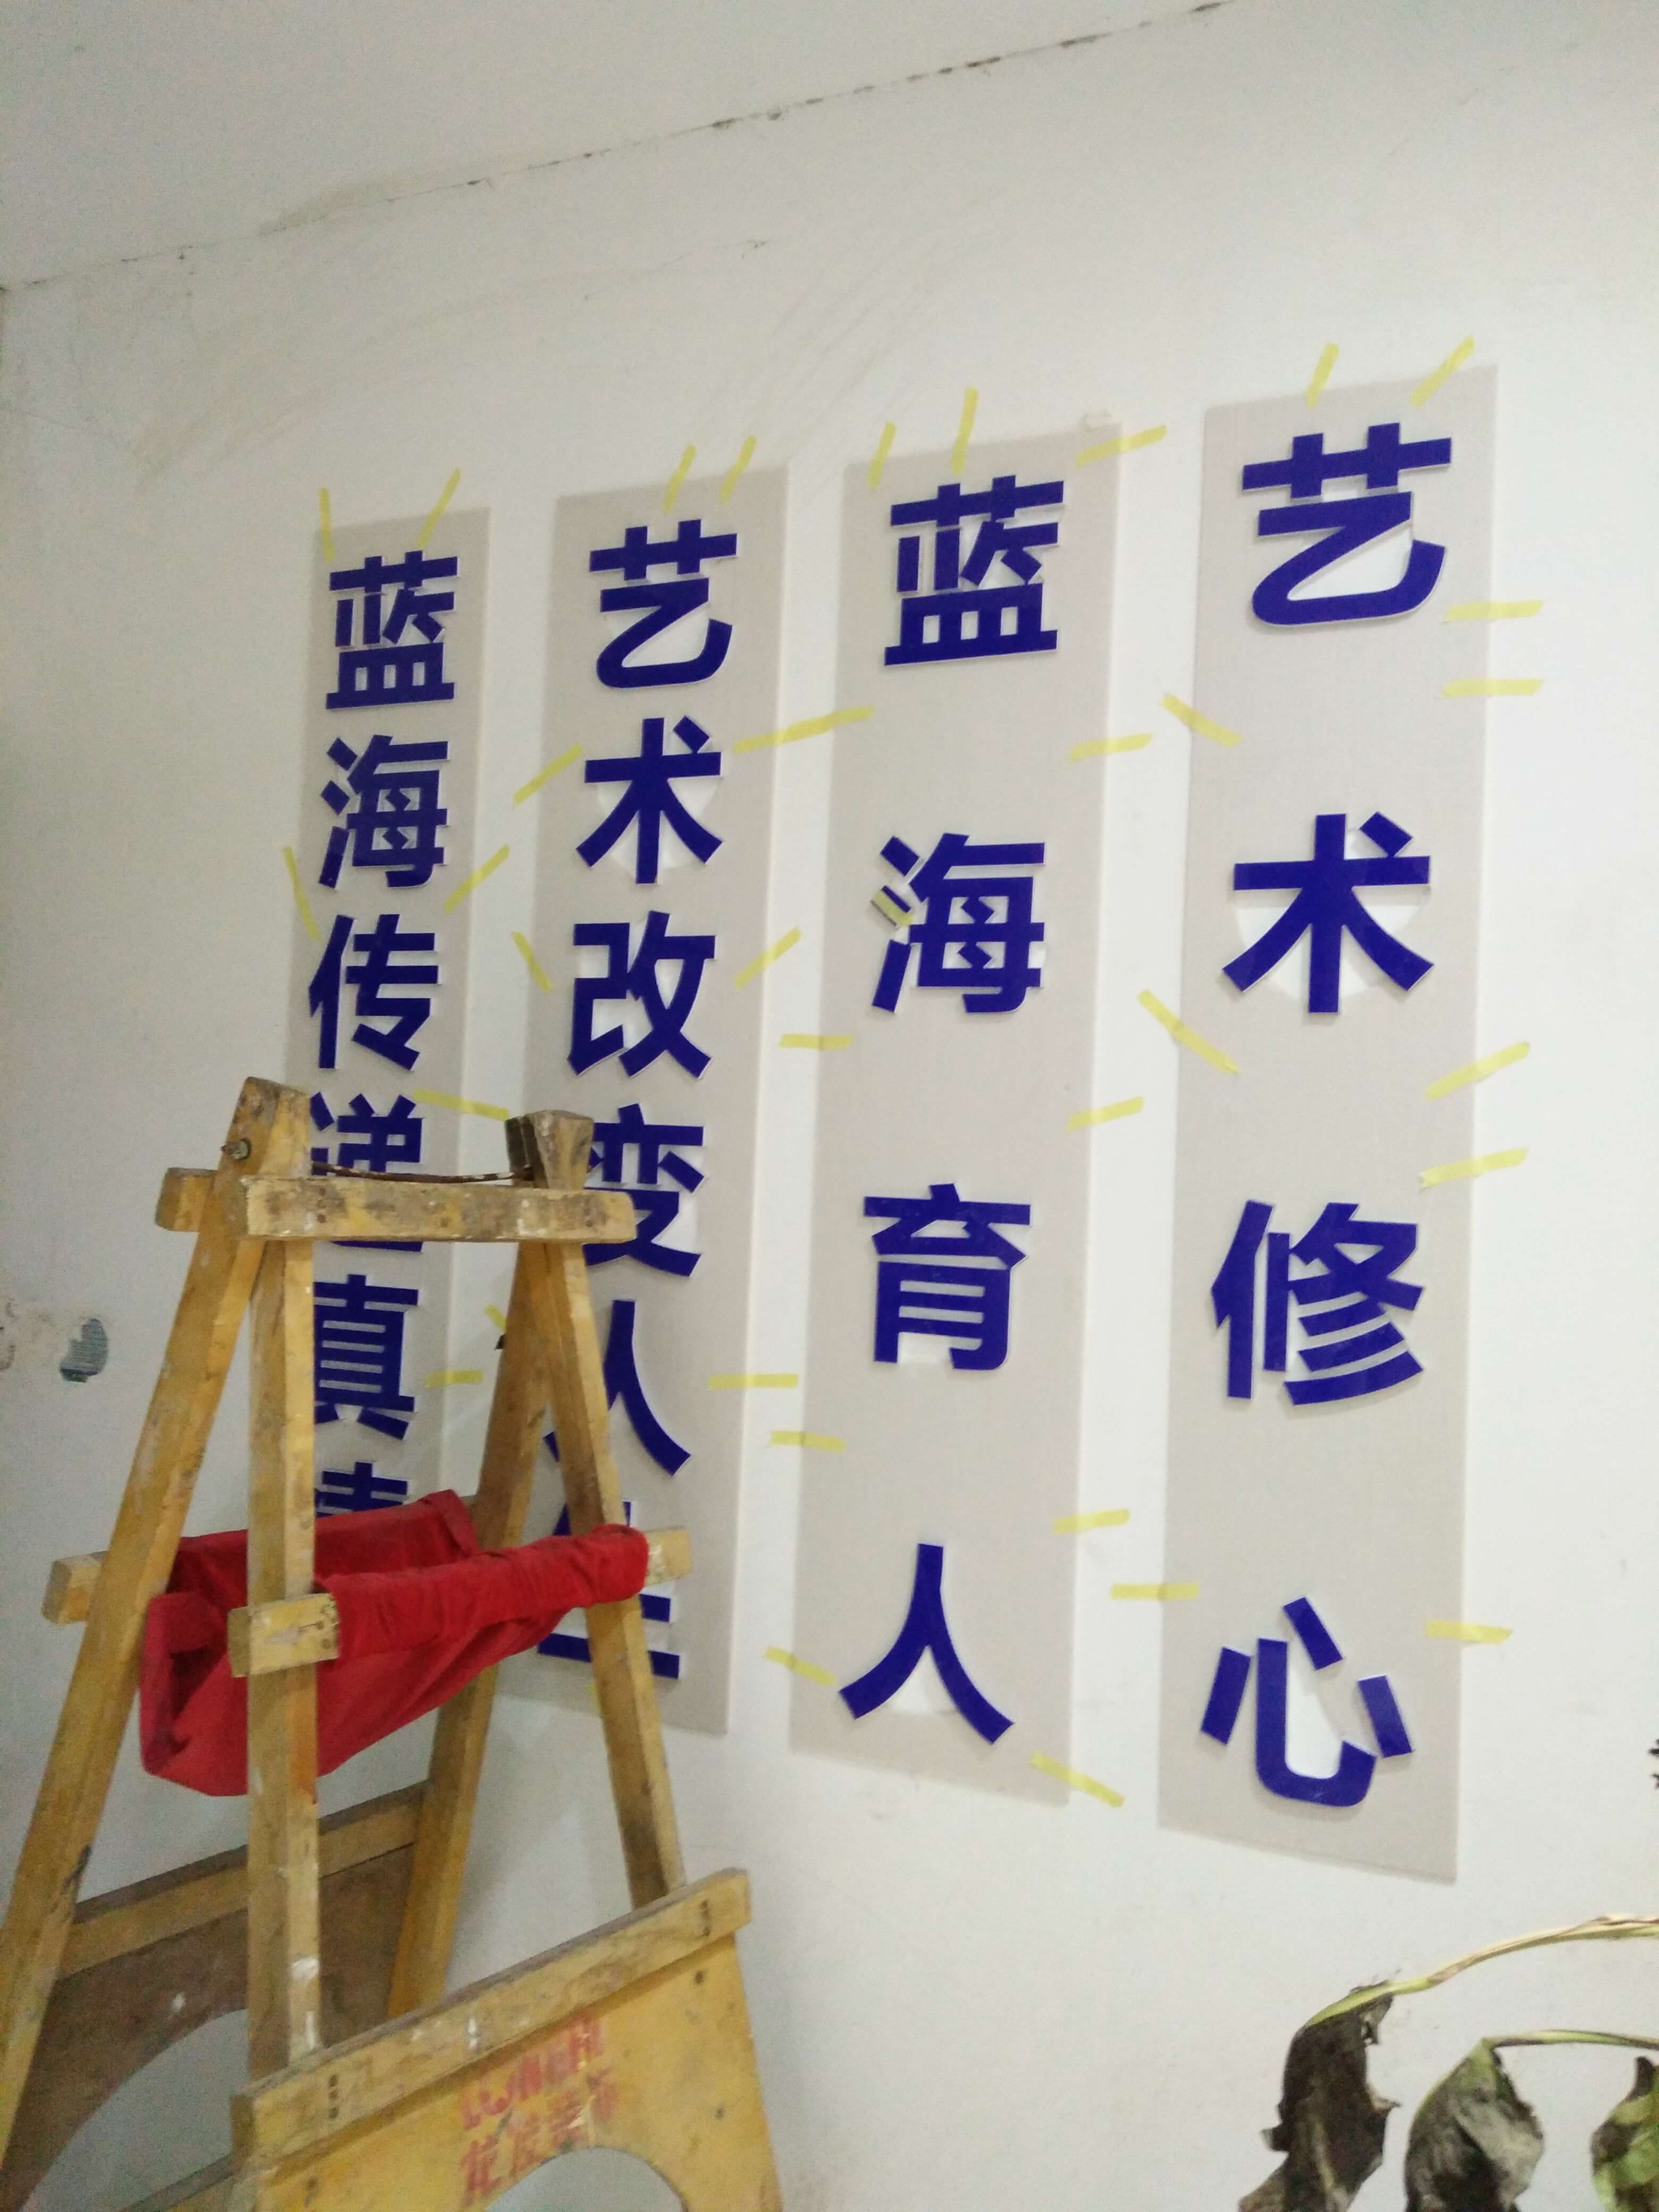 郑州背景墙、形象墙、门头招牌发光字、文化墙、软膜灯箱